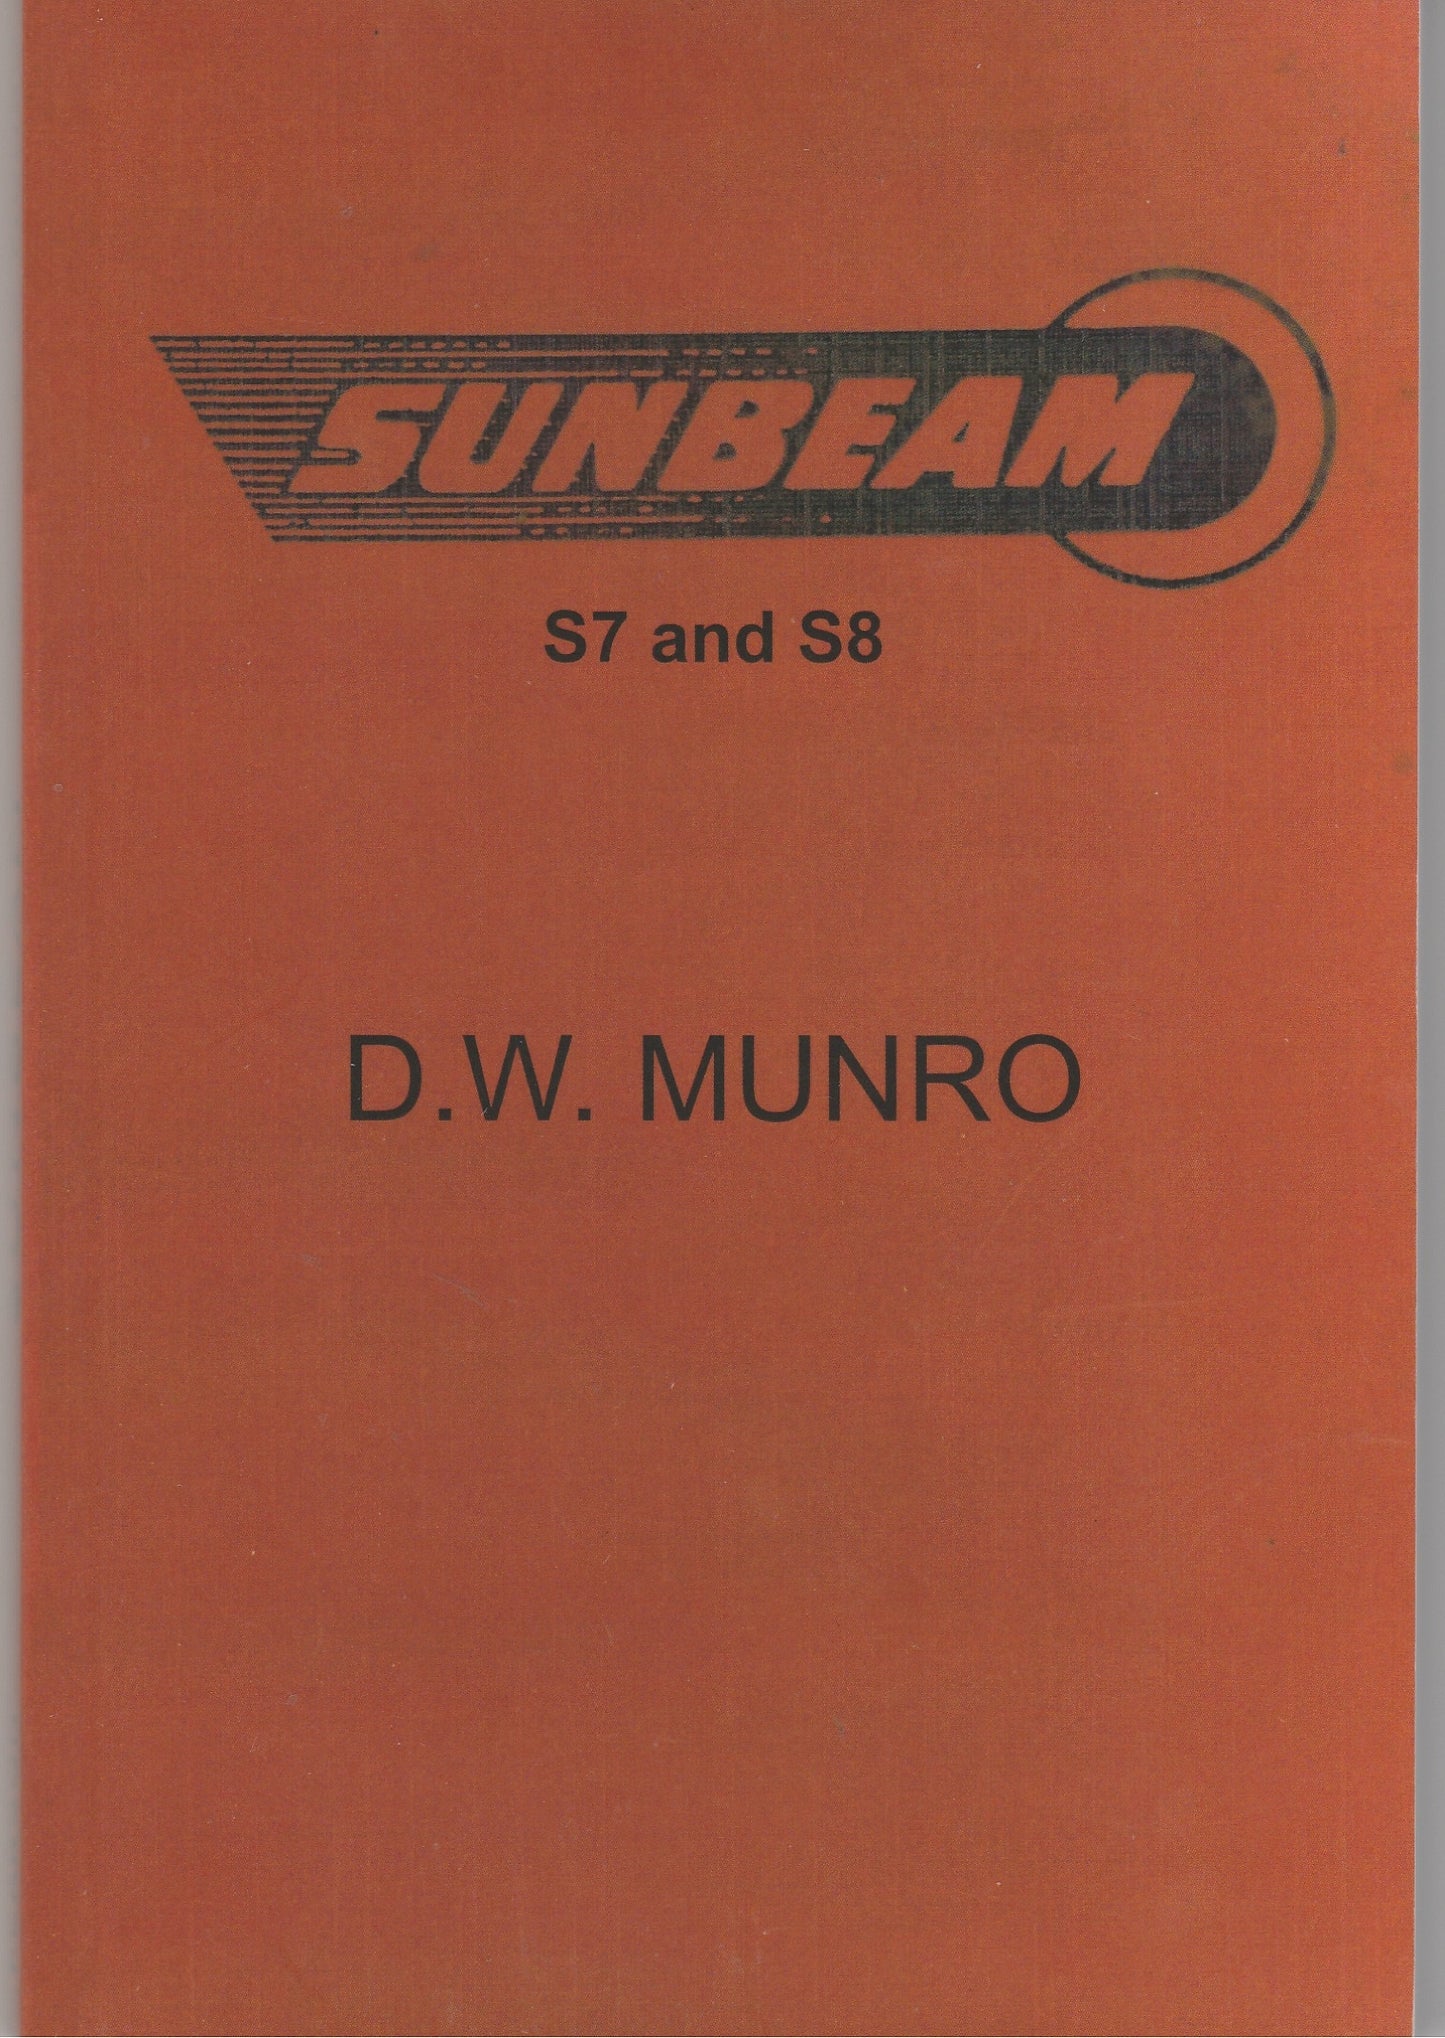 Sunbeam Motorcycles - Munro